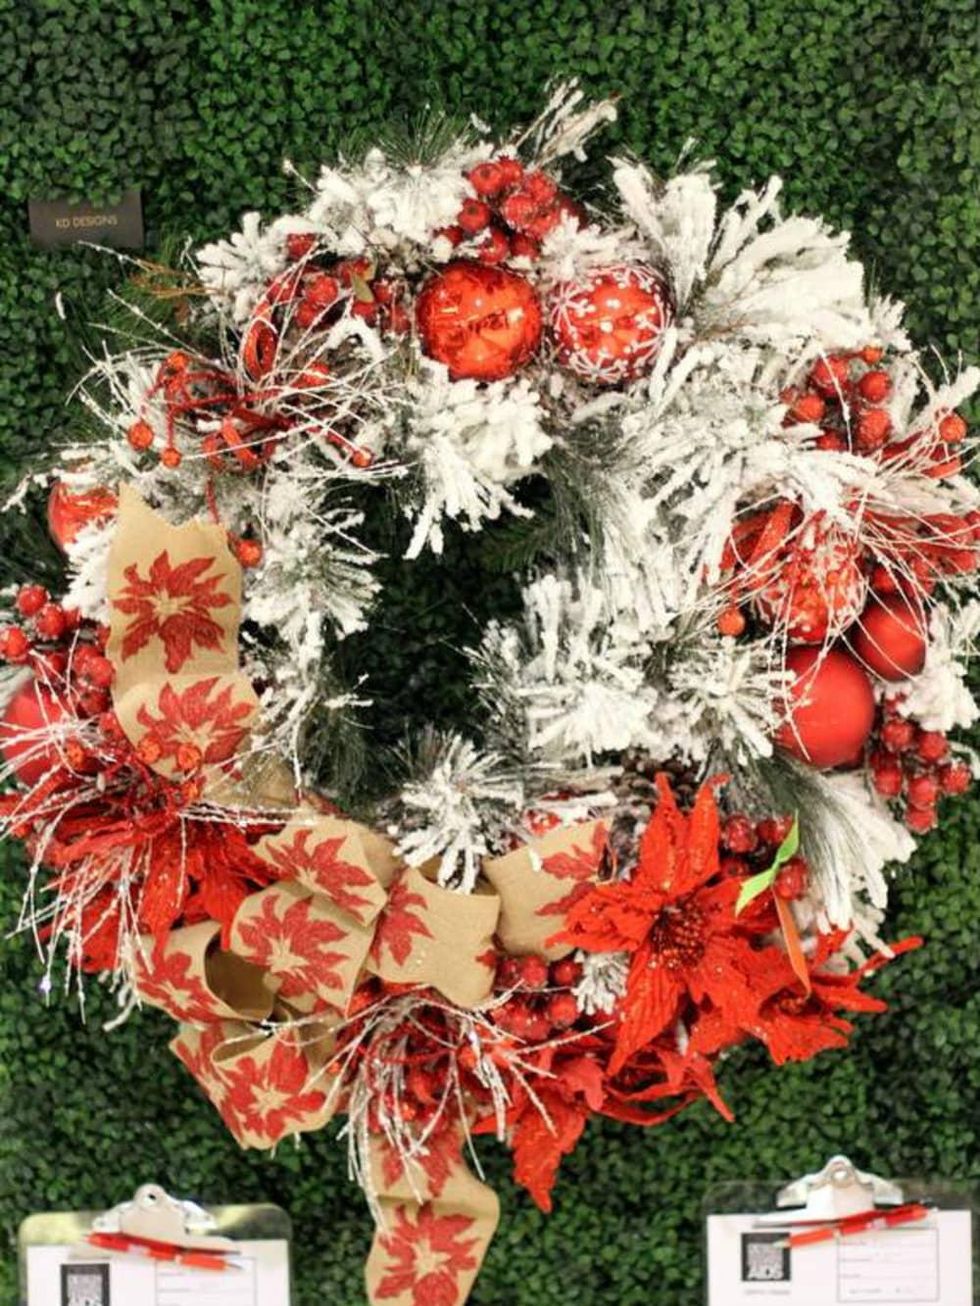 KD Designs wreath for DIFFA 2014